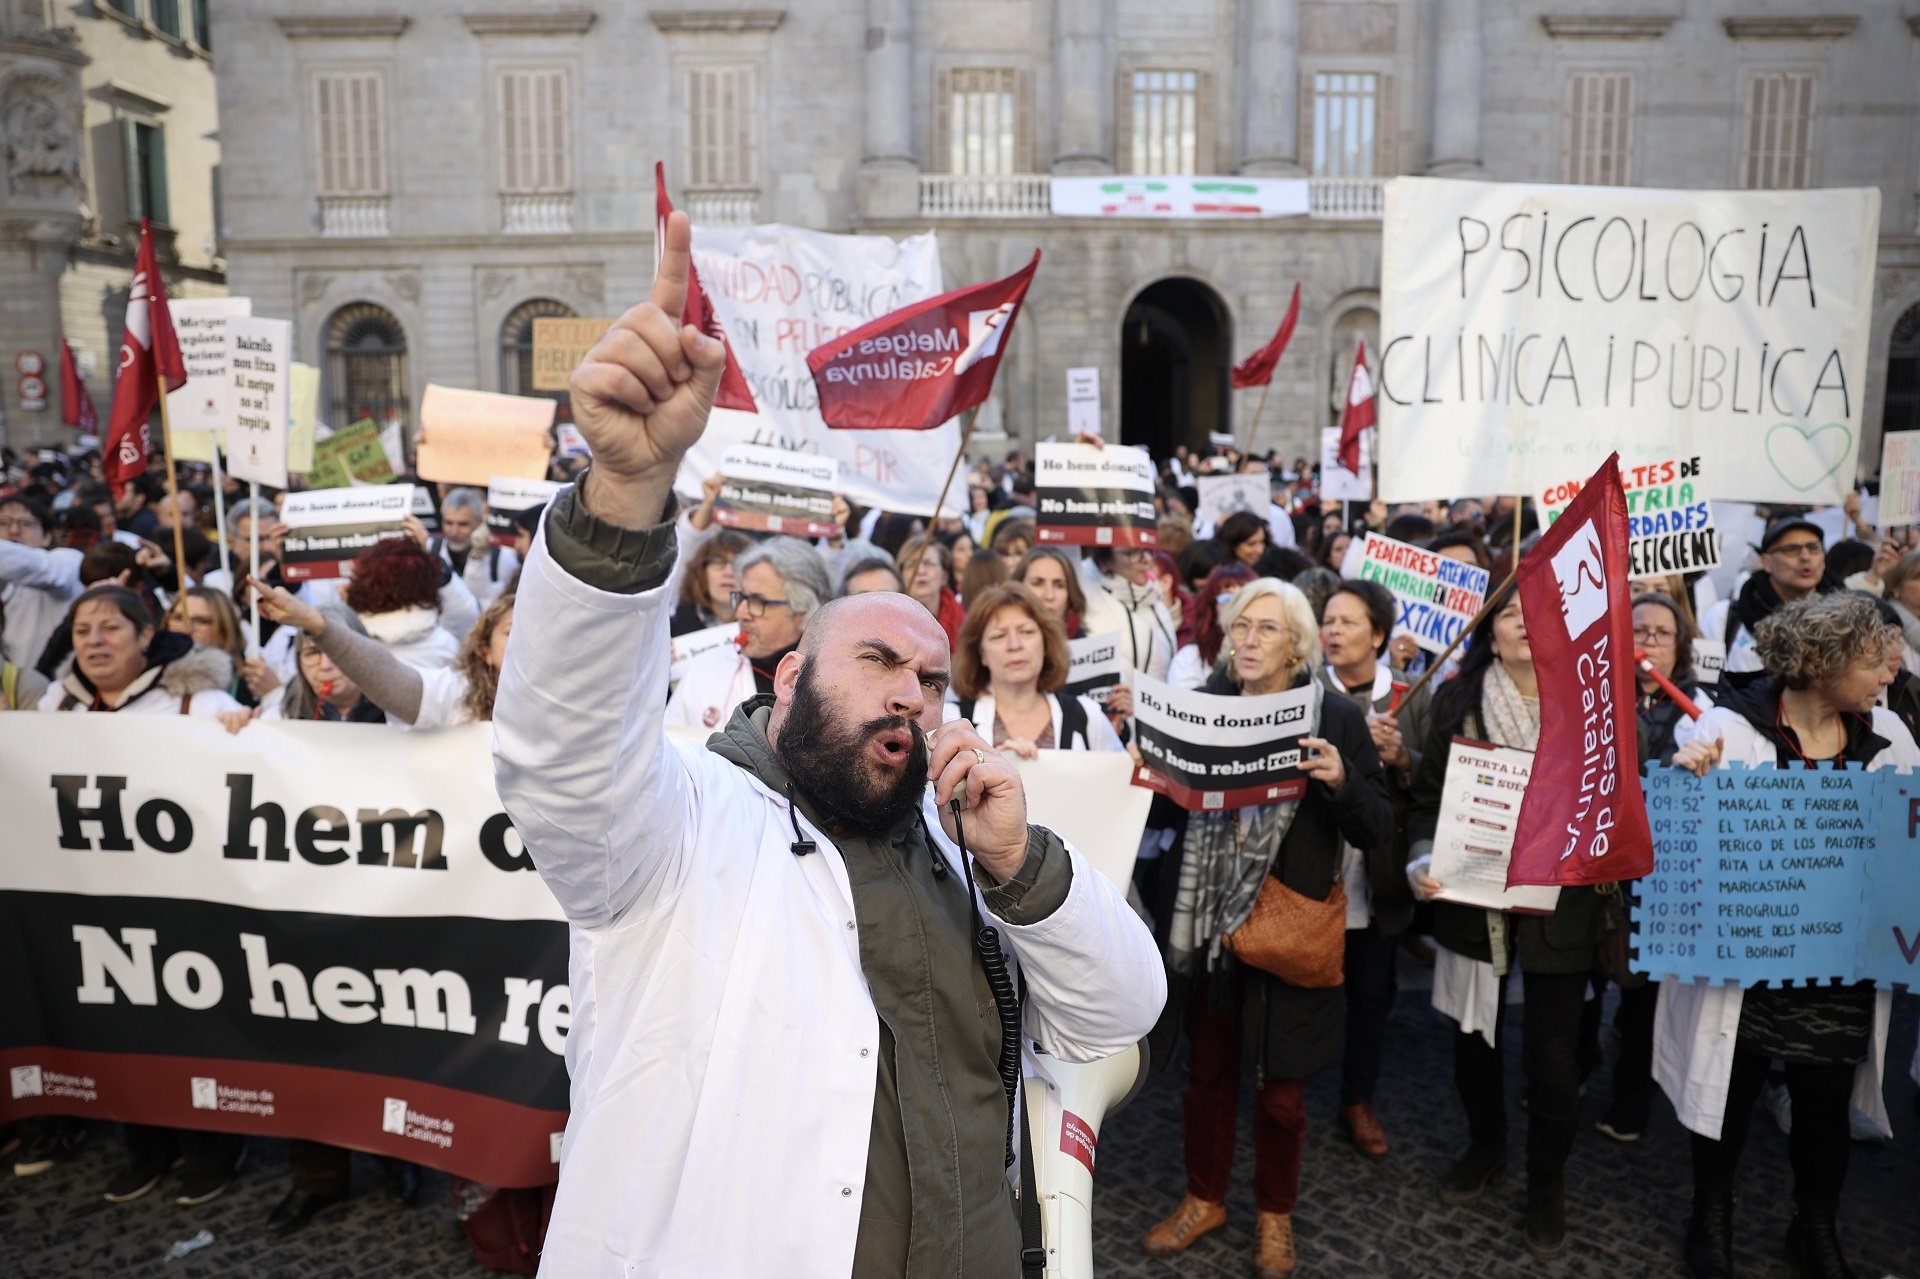 Els metges es planten davant del Parlament el segon dia de vaga:  "Que donin la cara"